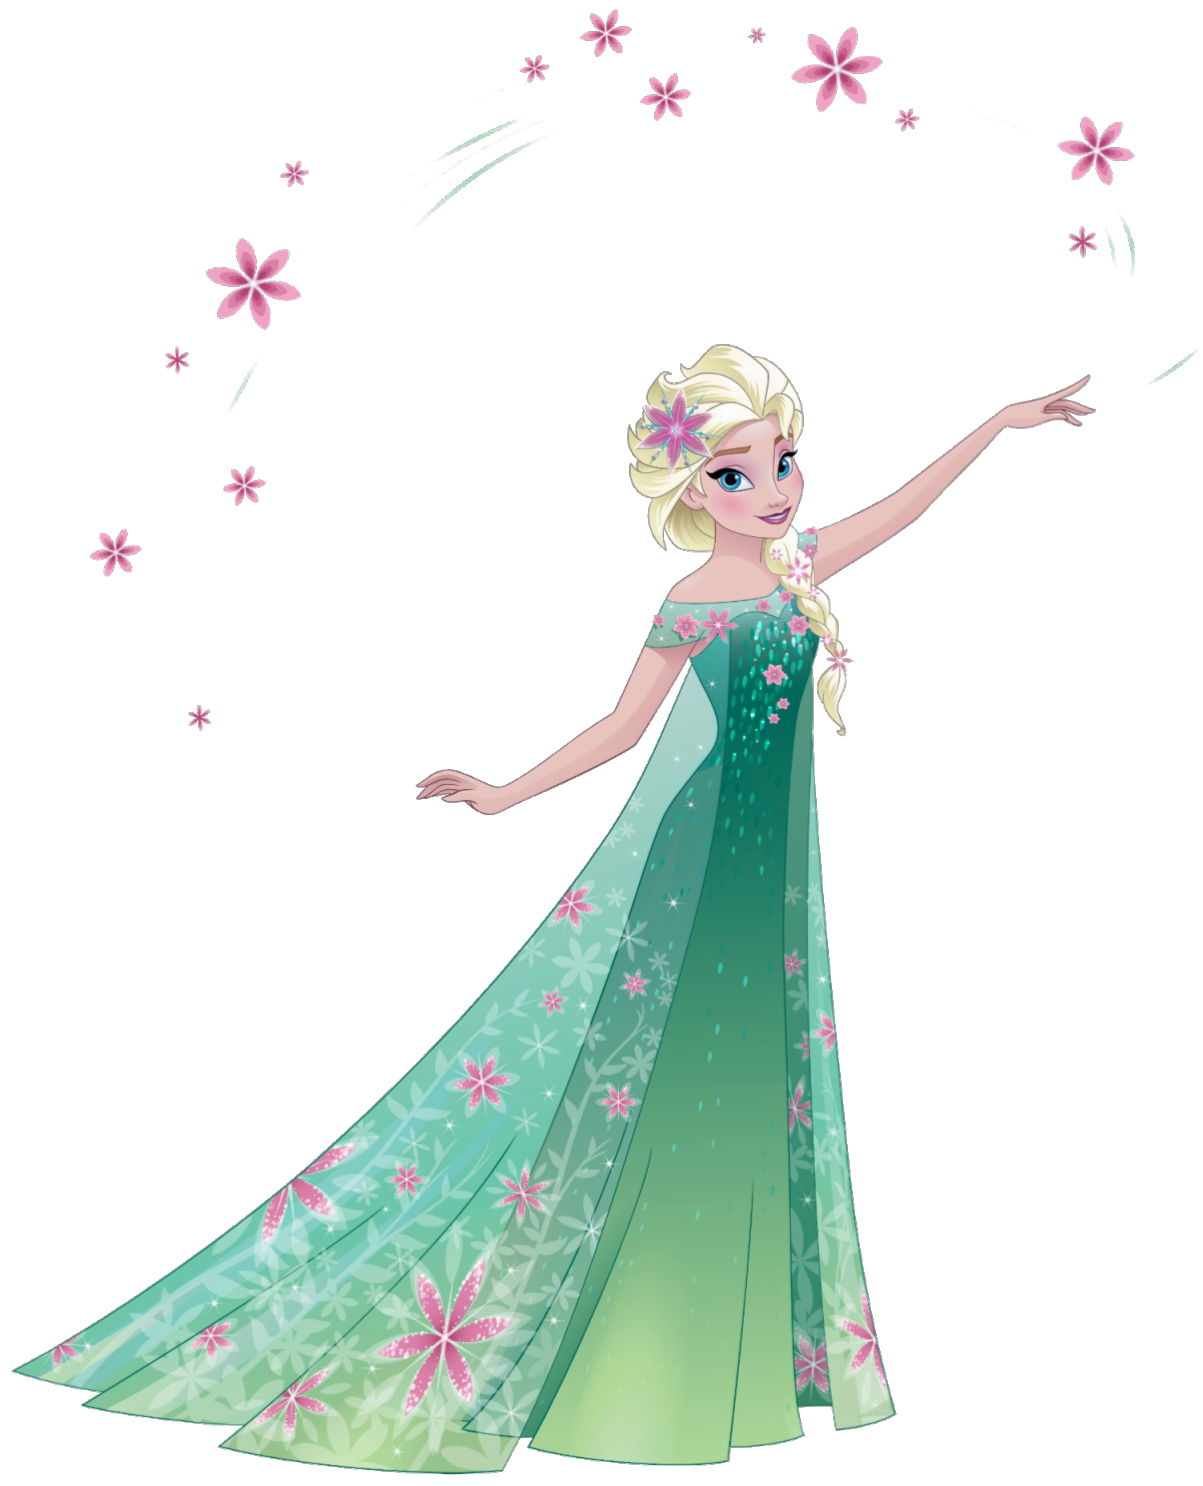 Disney Princess Artworkspng 9833